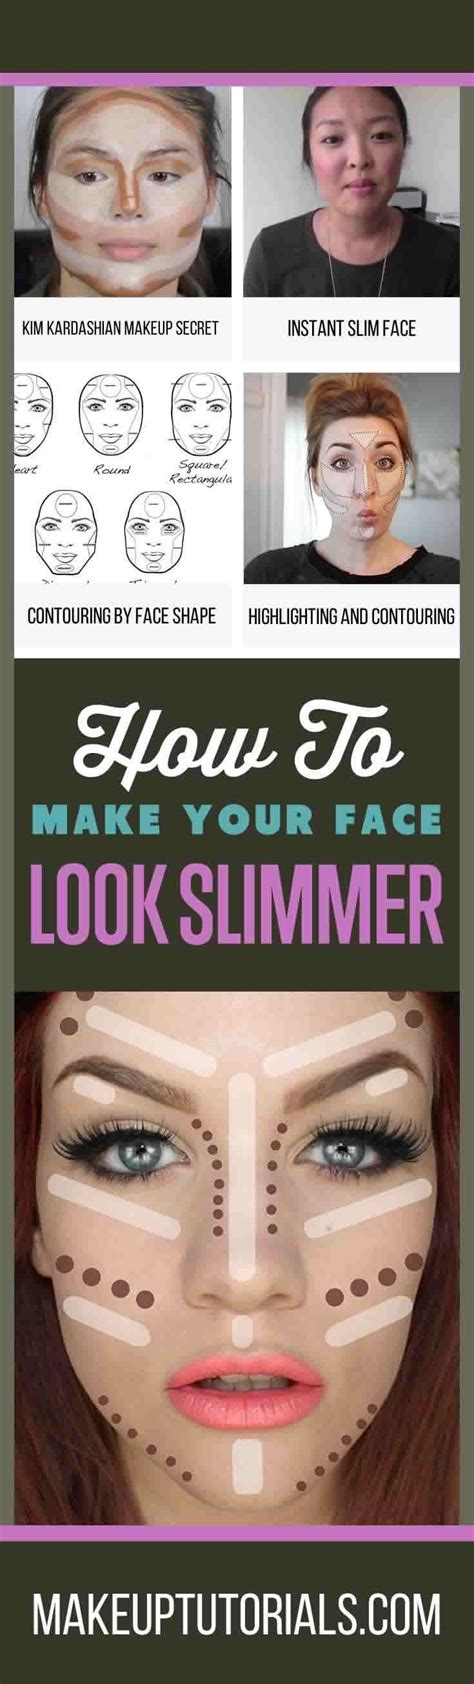 how to make your face thinner with makeup makeup tutorials contour makeup makeup tips